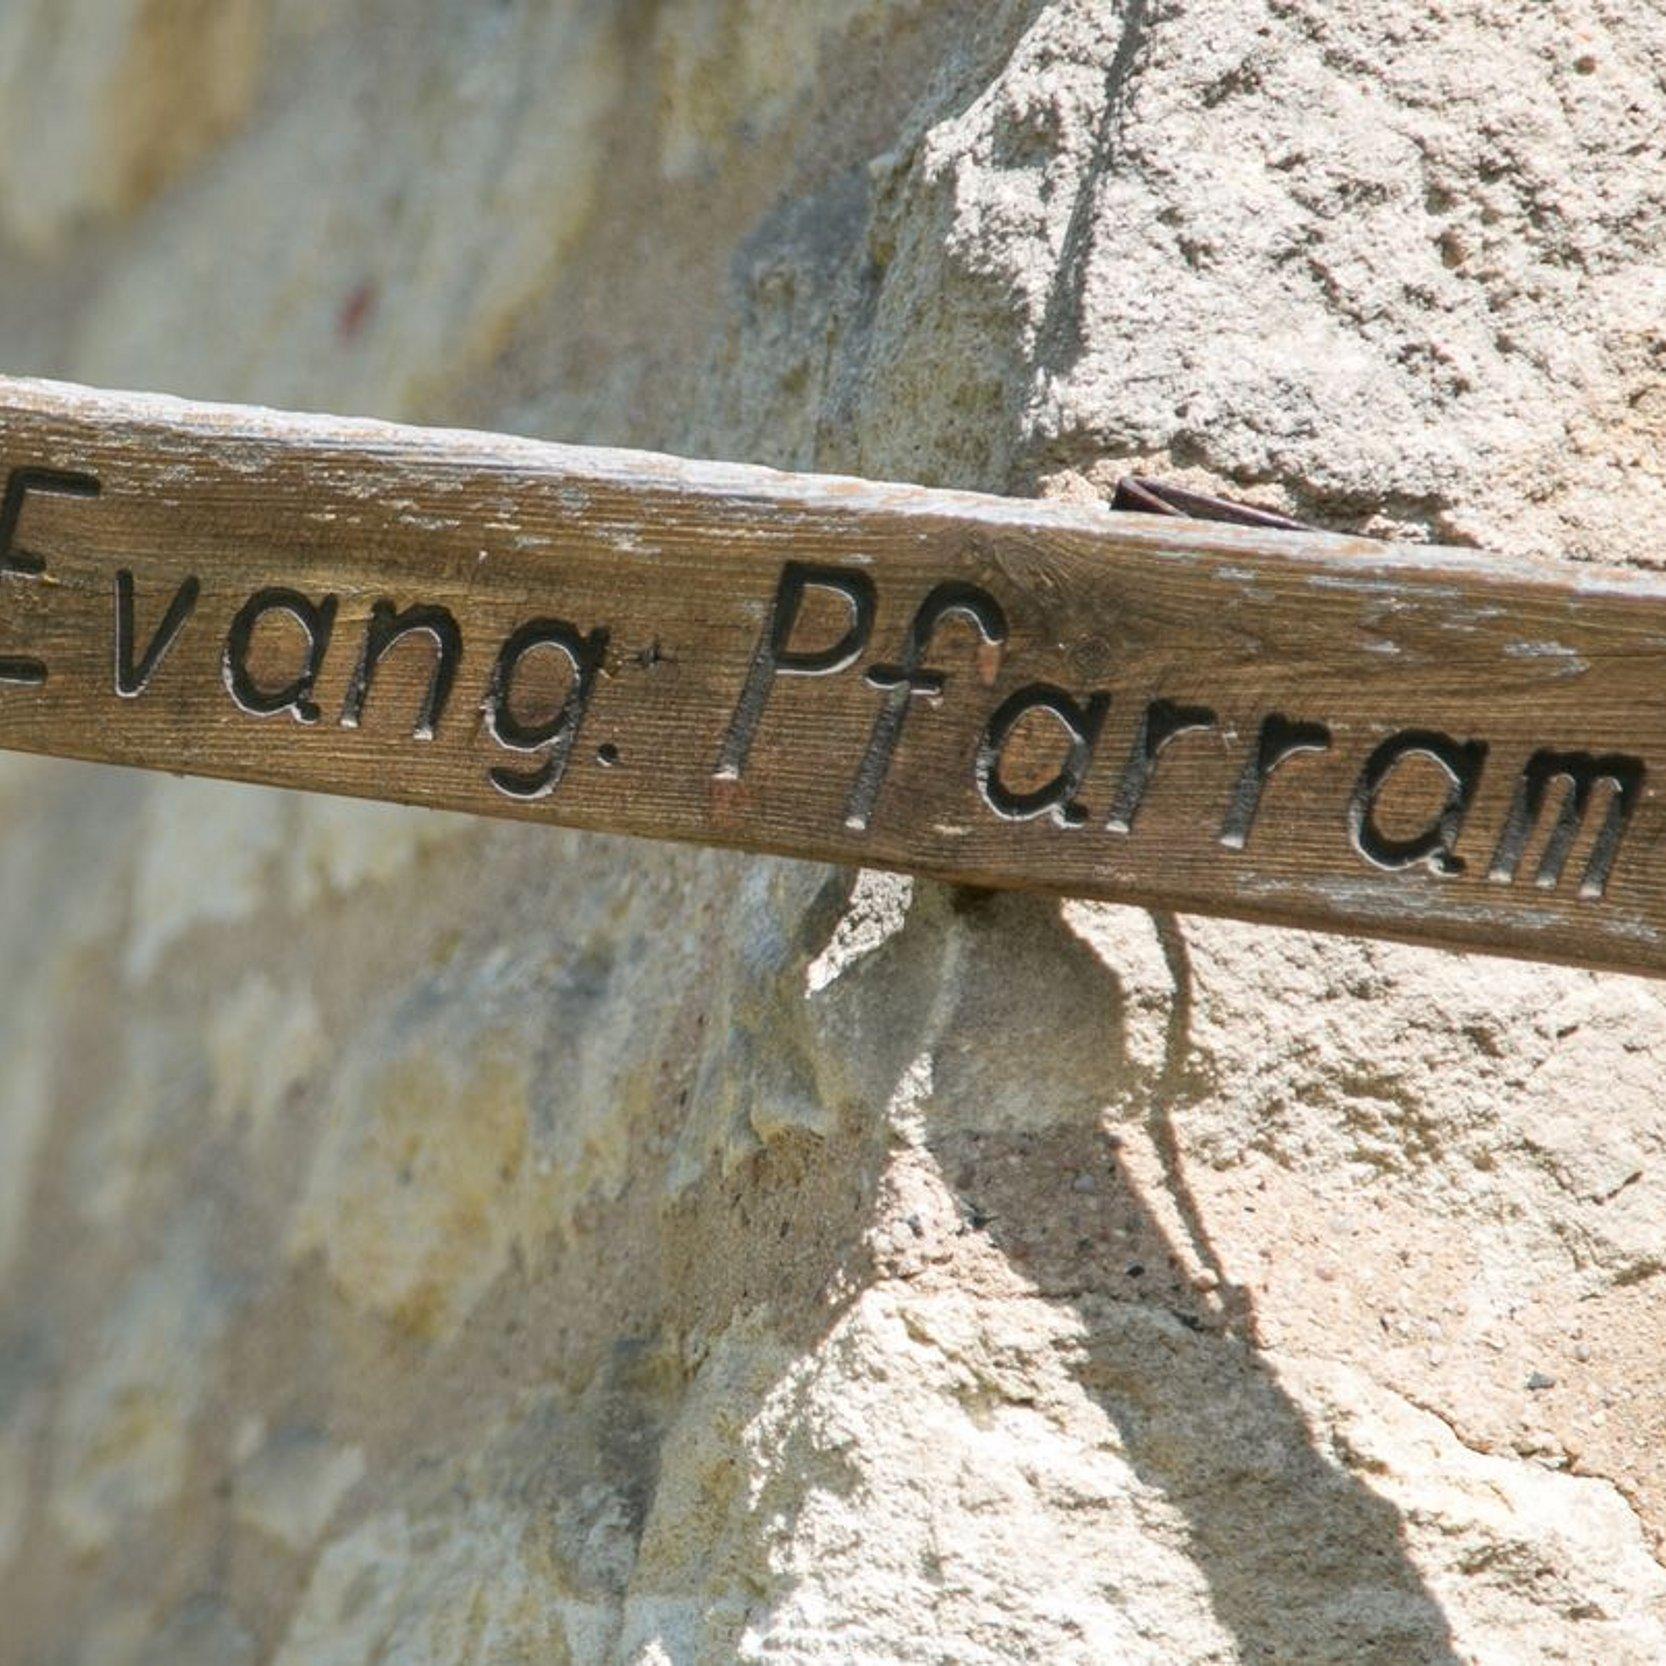 Holzpfeil mit Aufschrift "Evang. Pfarramt" an einer Natursteinwand